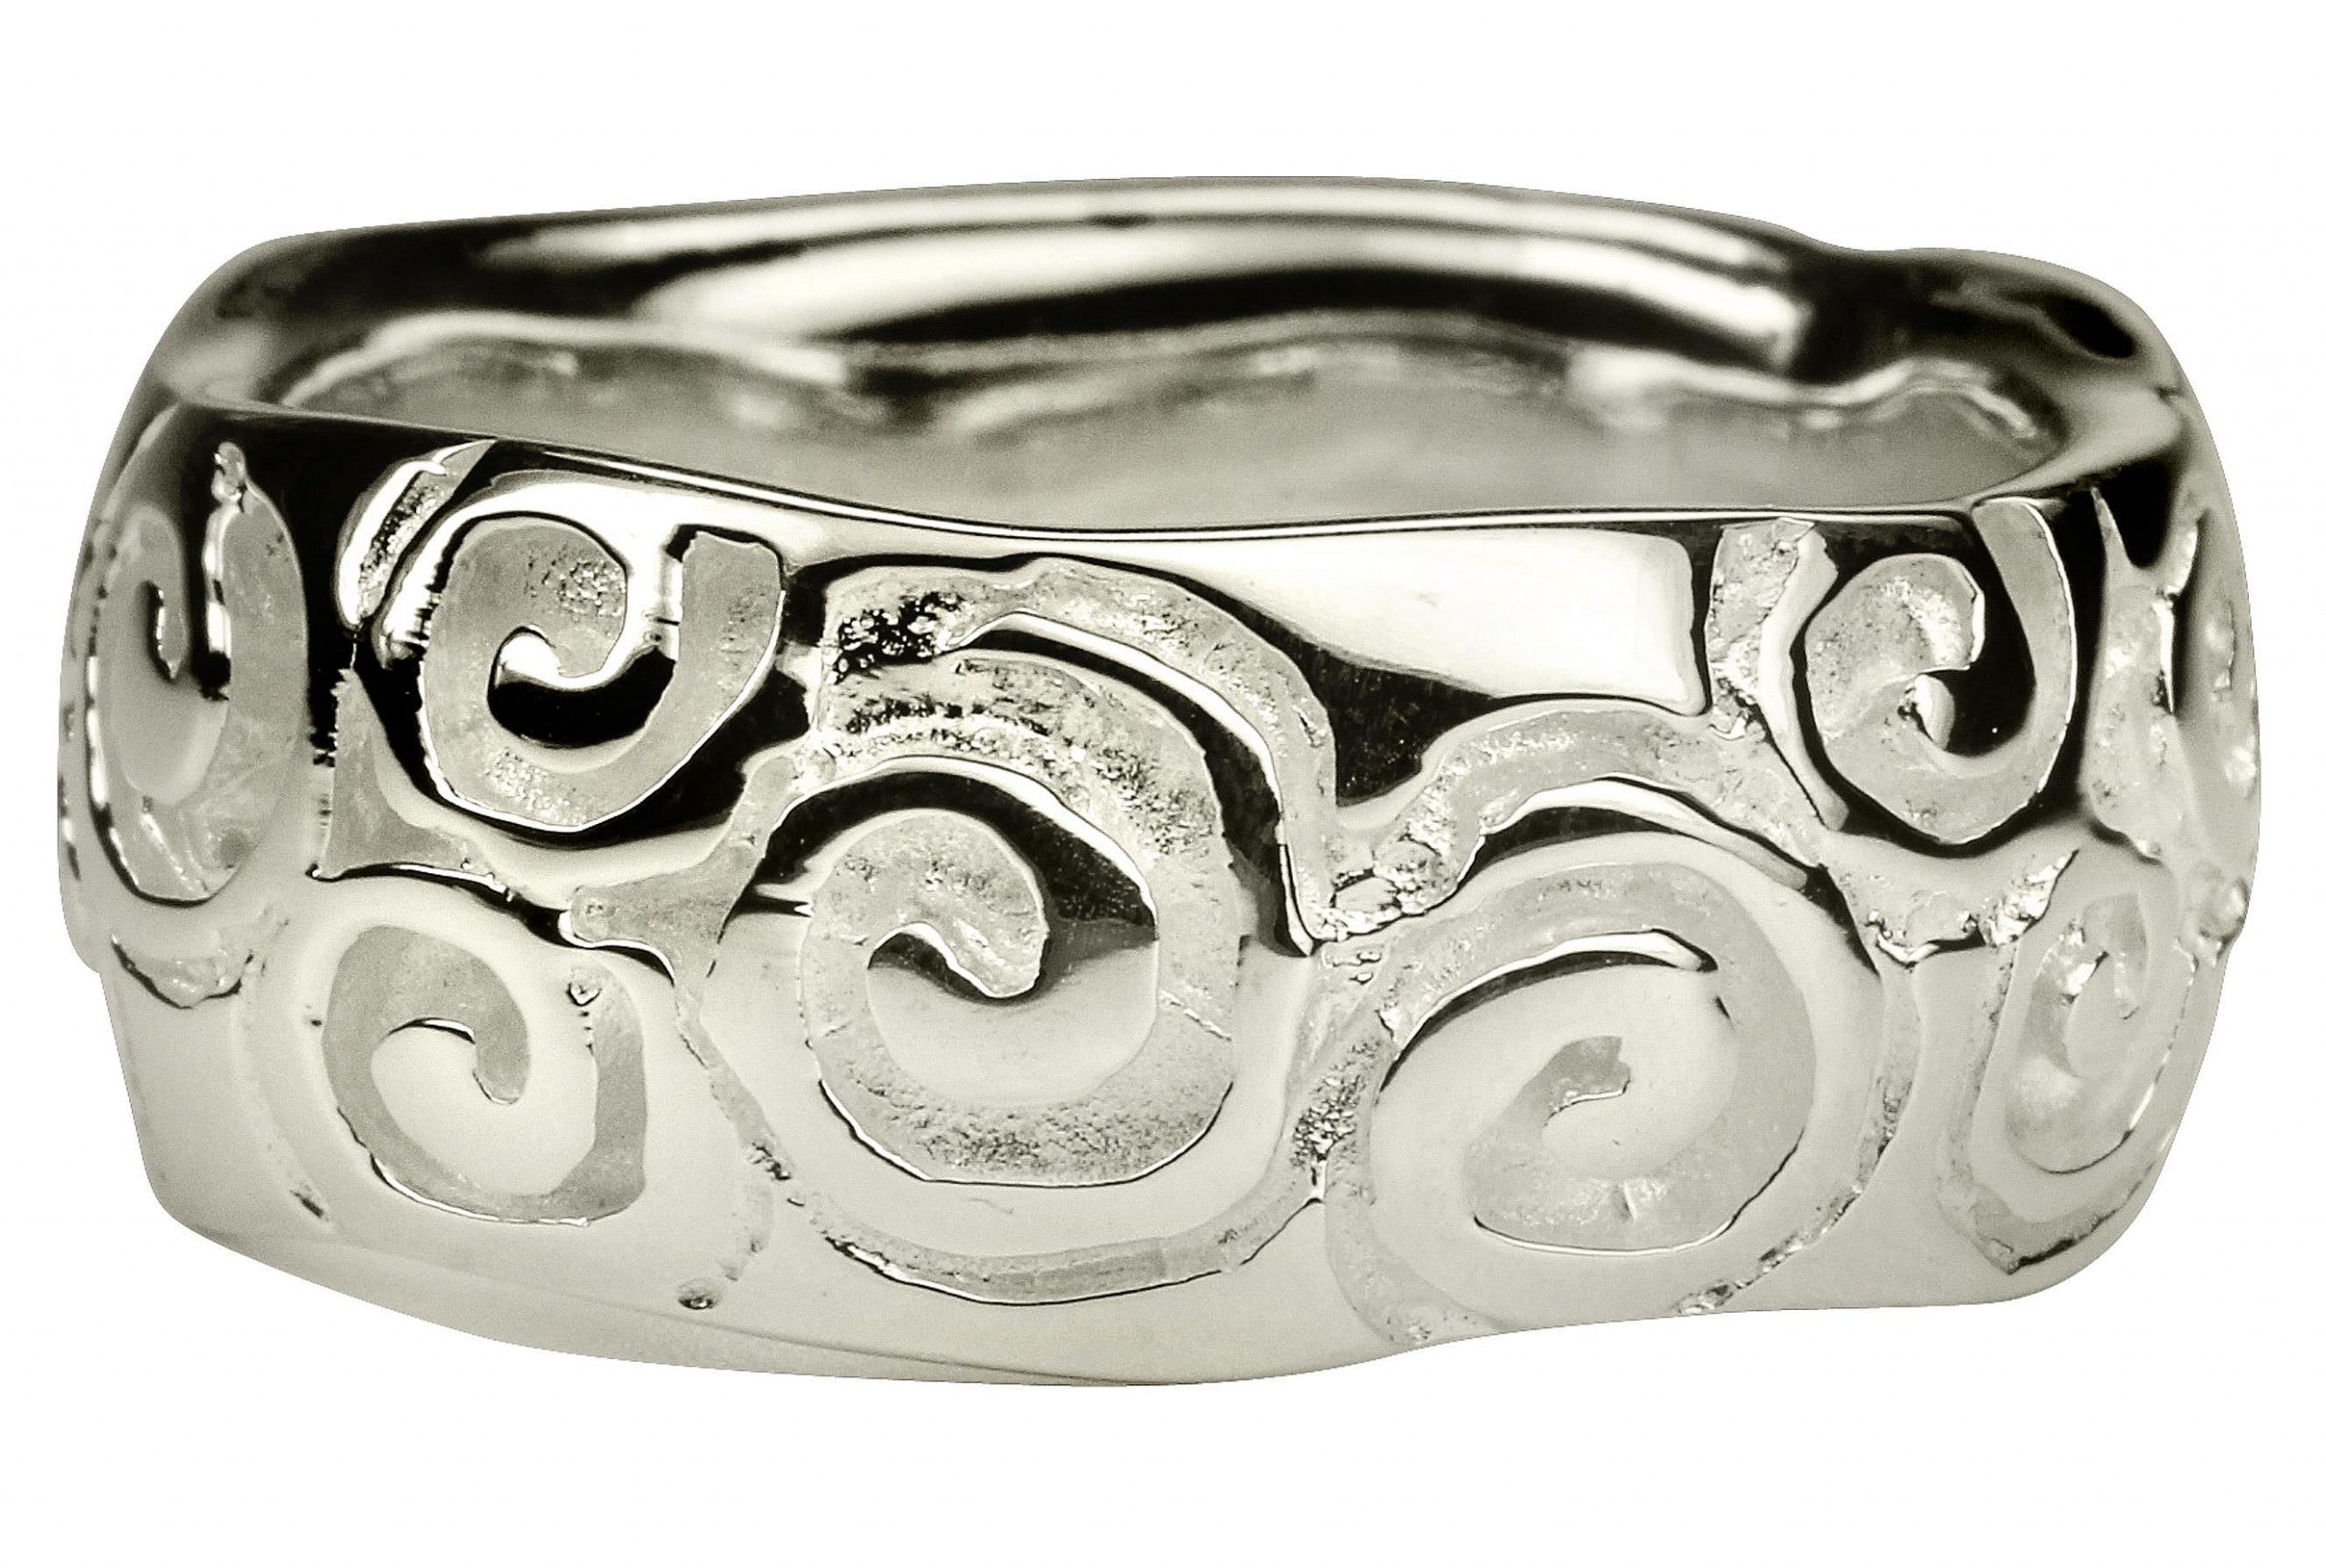 Bandring aus Silber für Damen mit einem durchlaufenden Ornamentband an der Oberfläche.